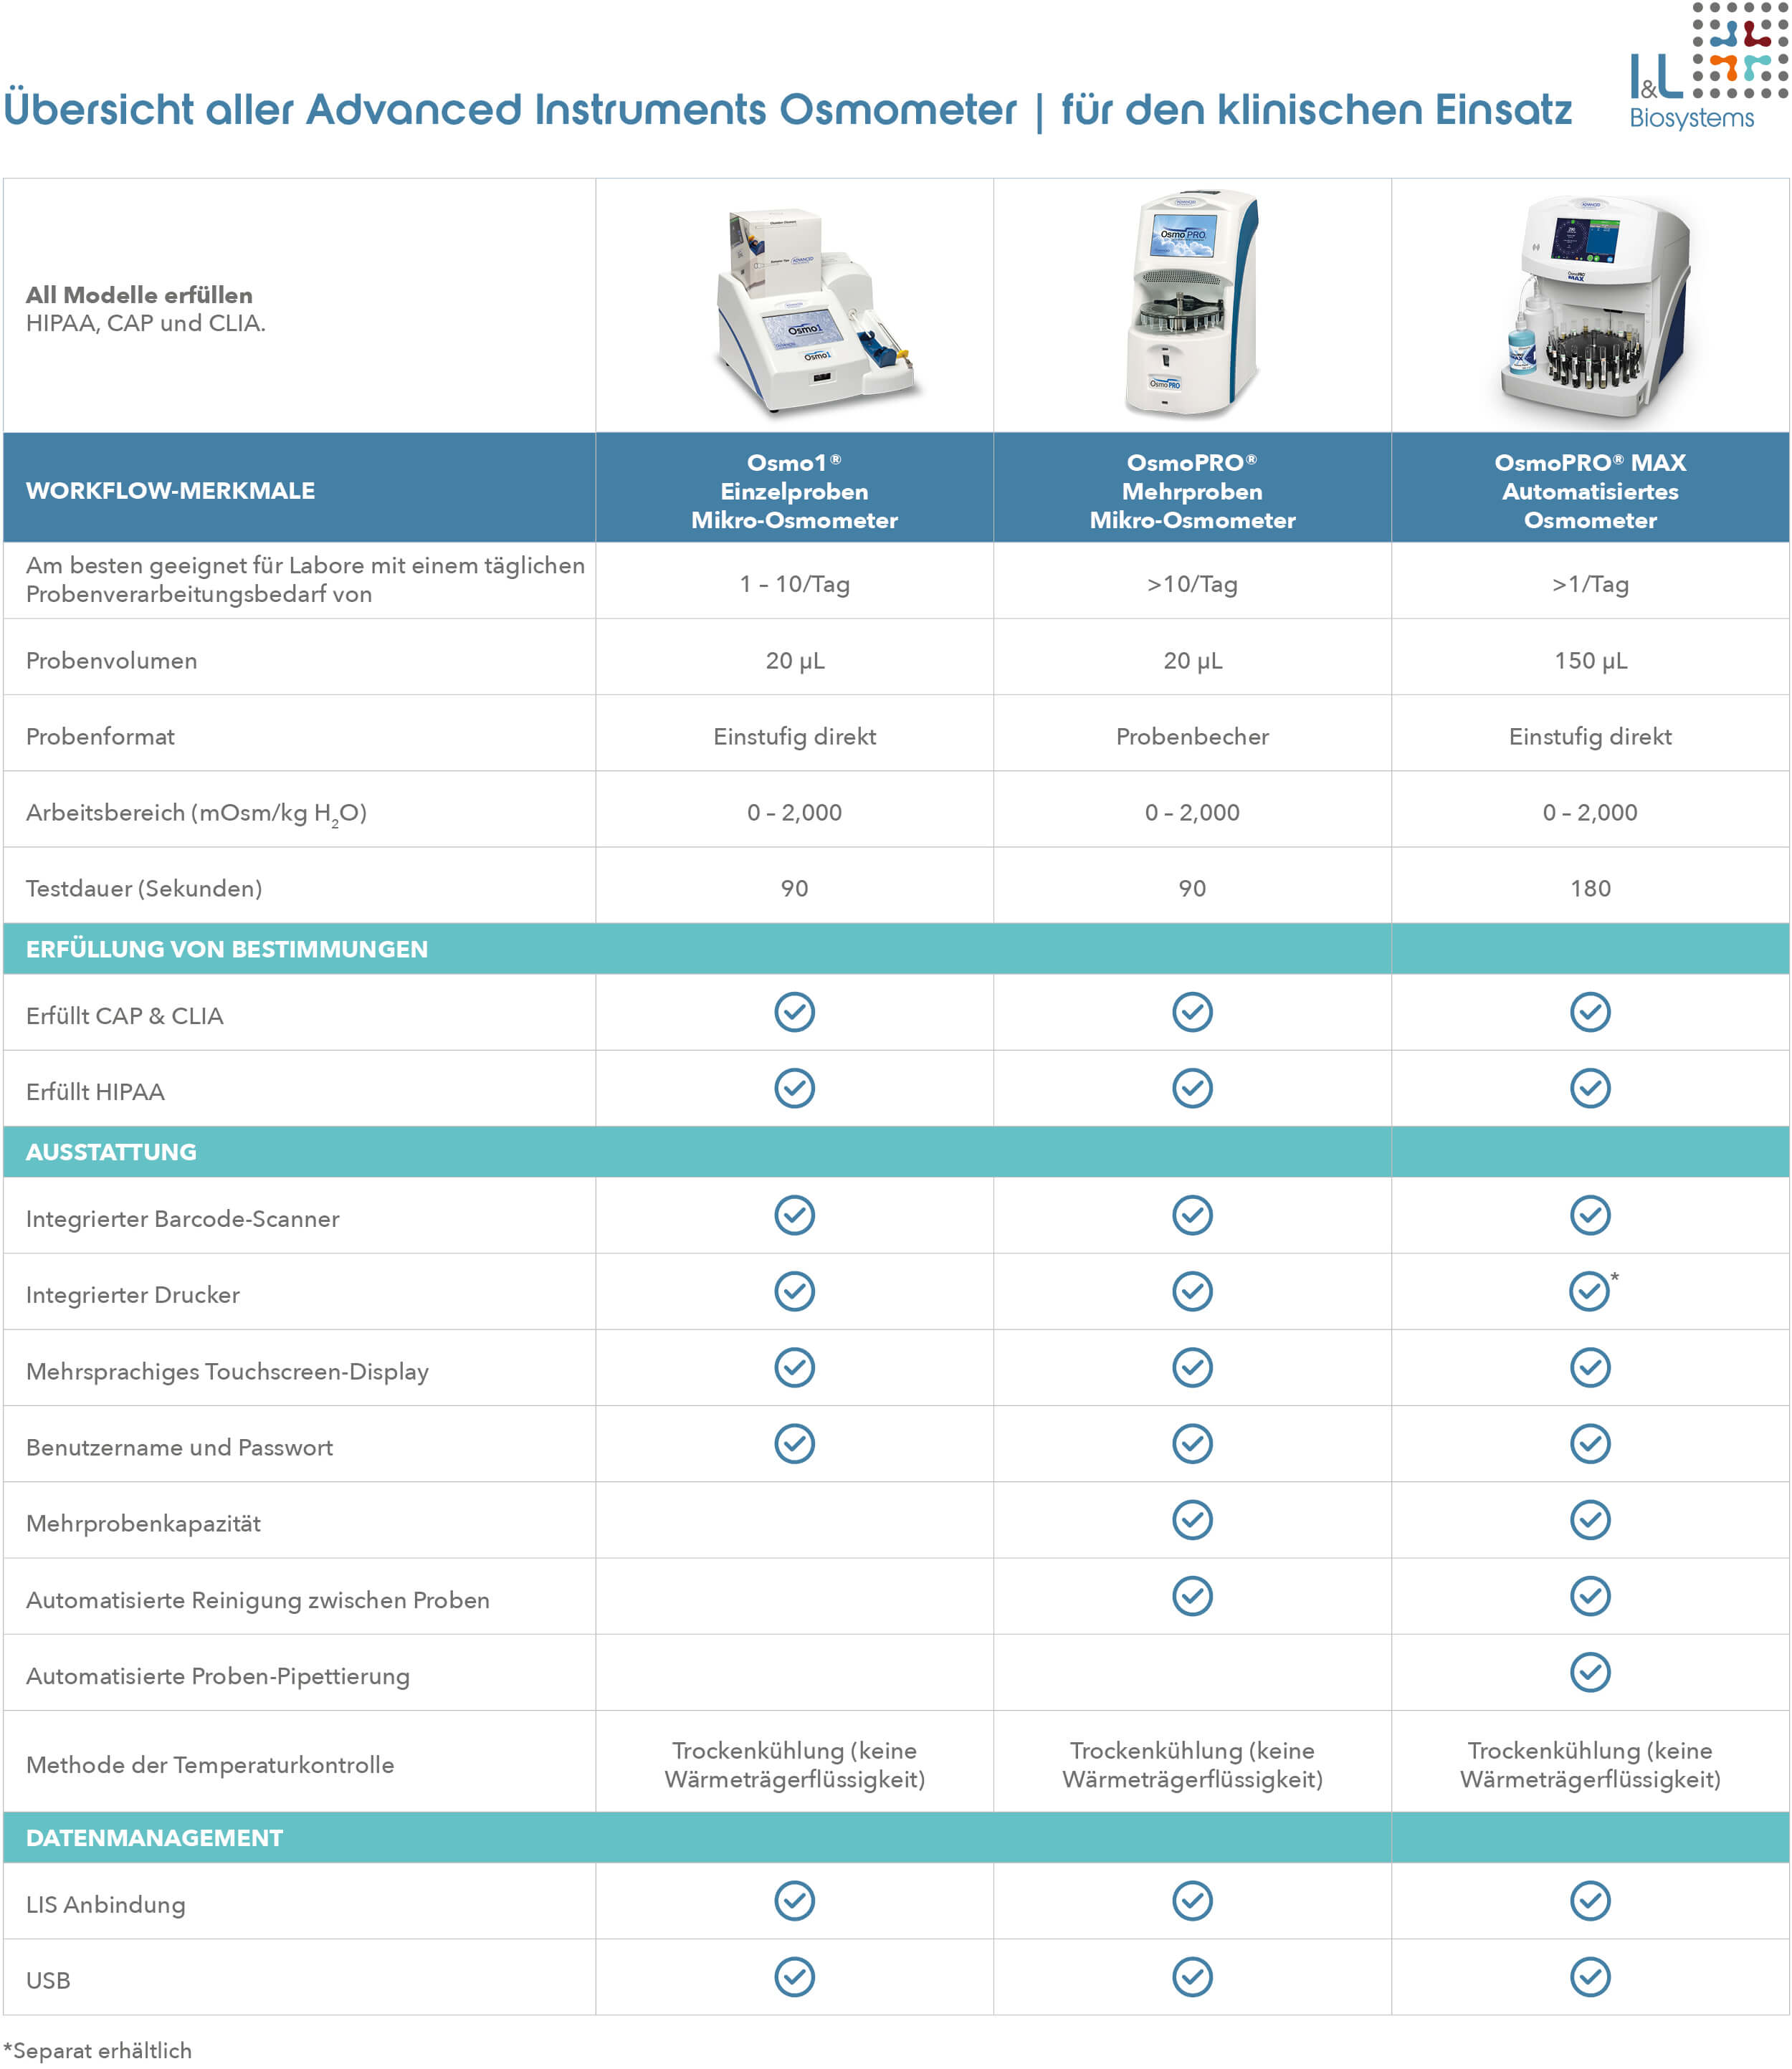 Übersicht Advanced Instruments Osmometer für den Klinischen Einsatz